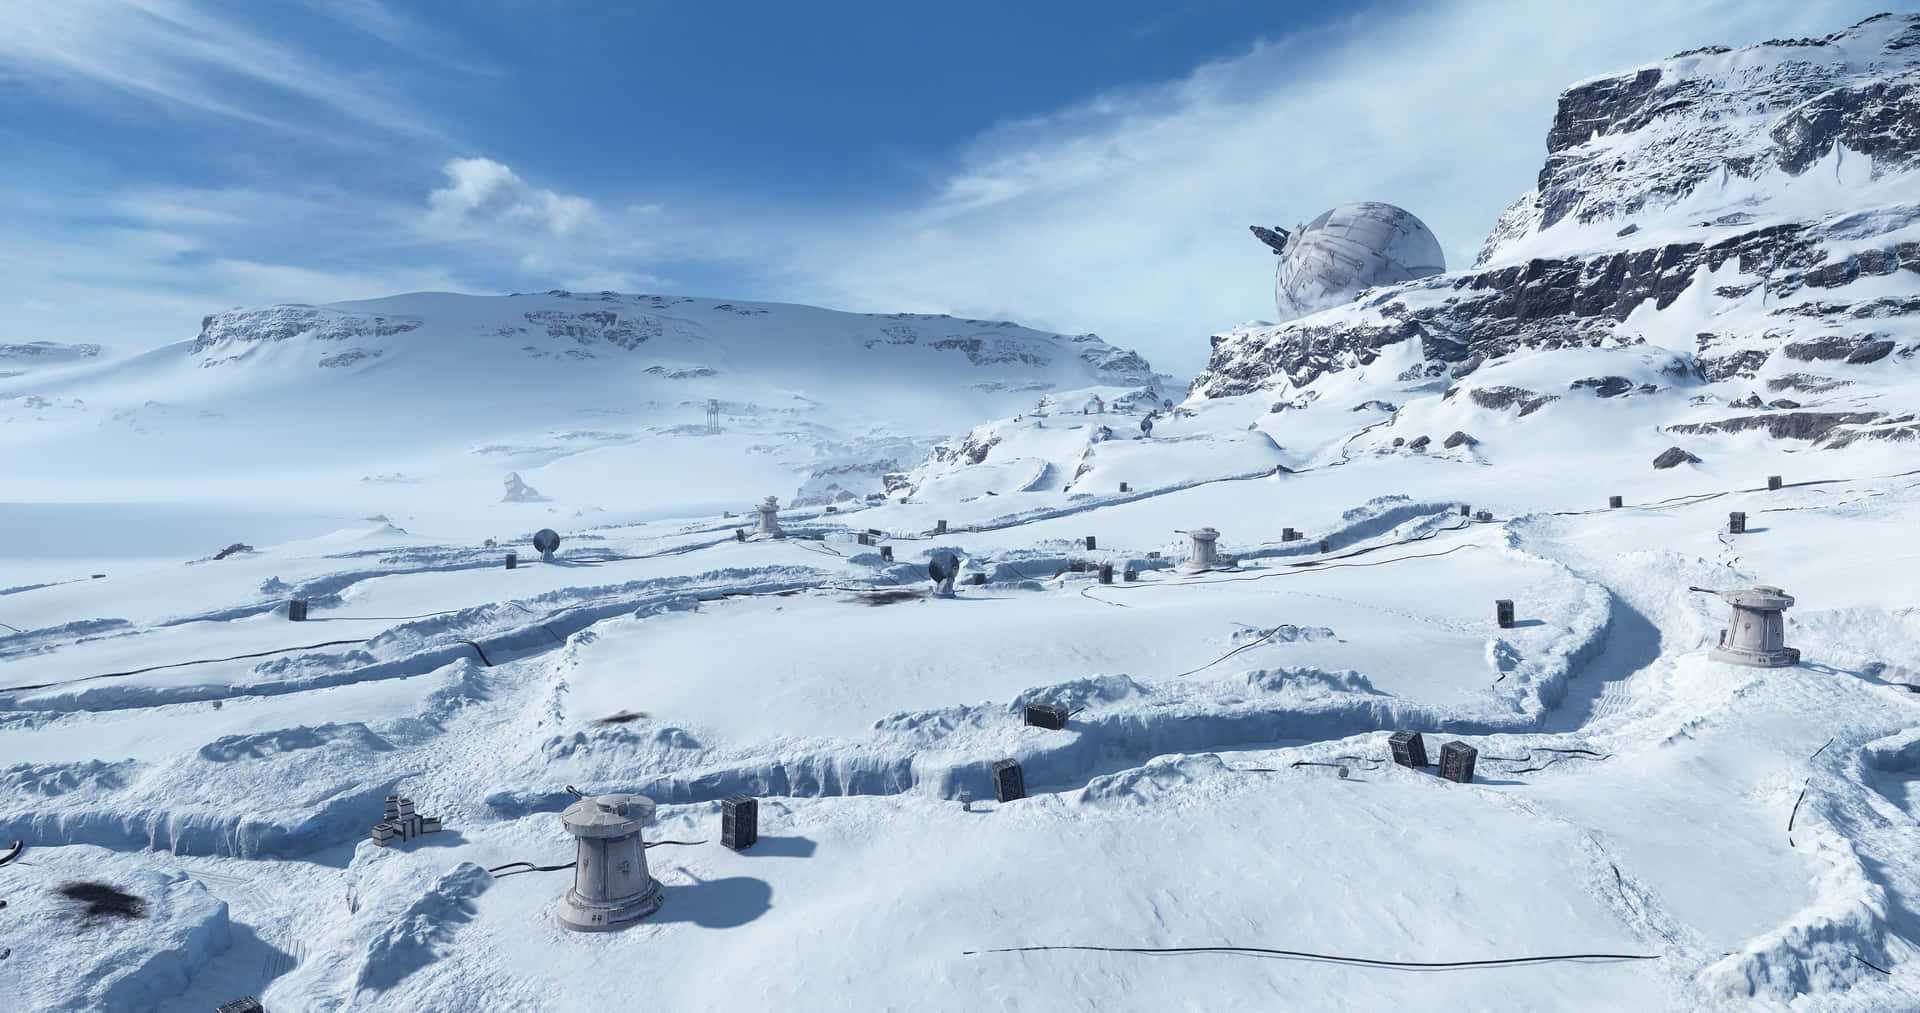 Star Wars Zoom-baggrund Hoth med sneagtig tekstur